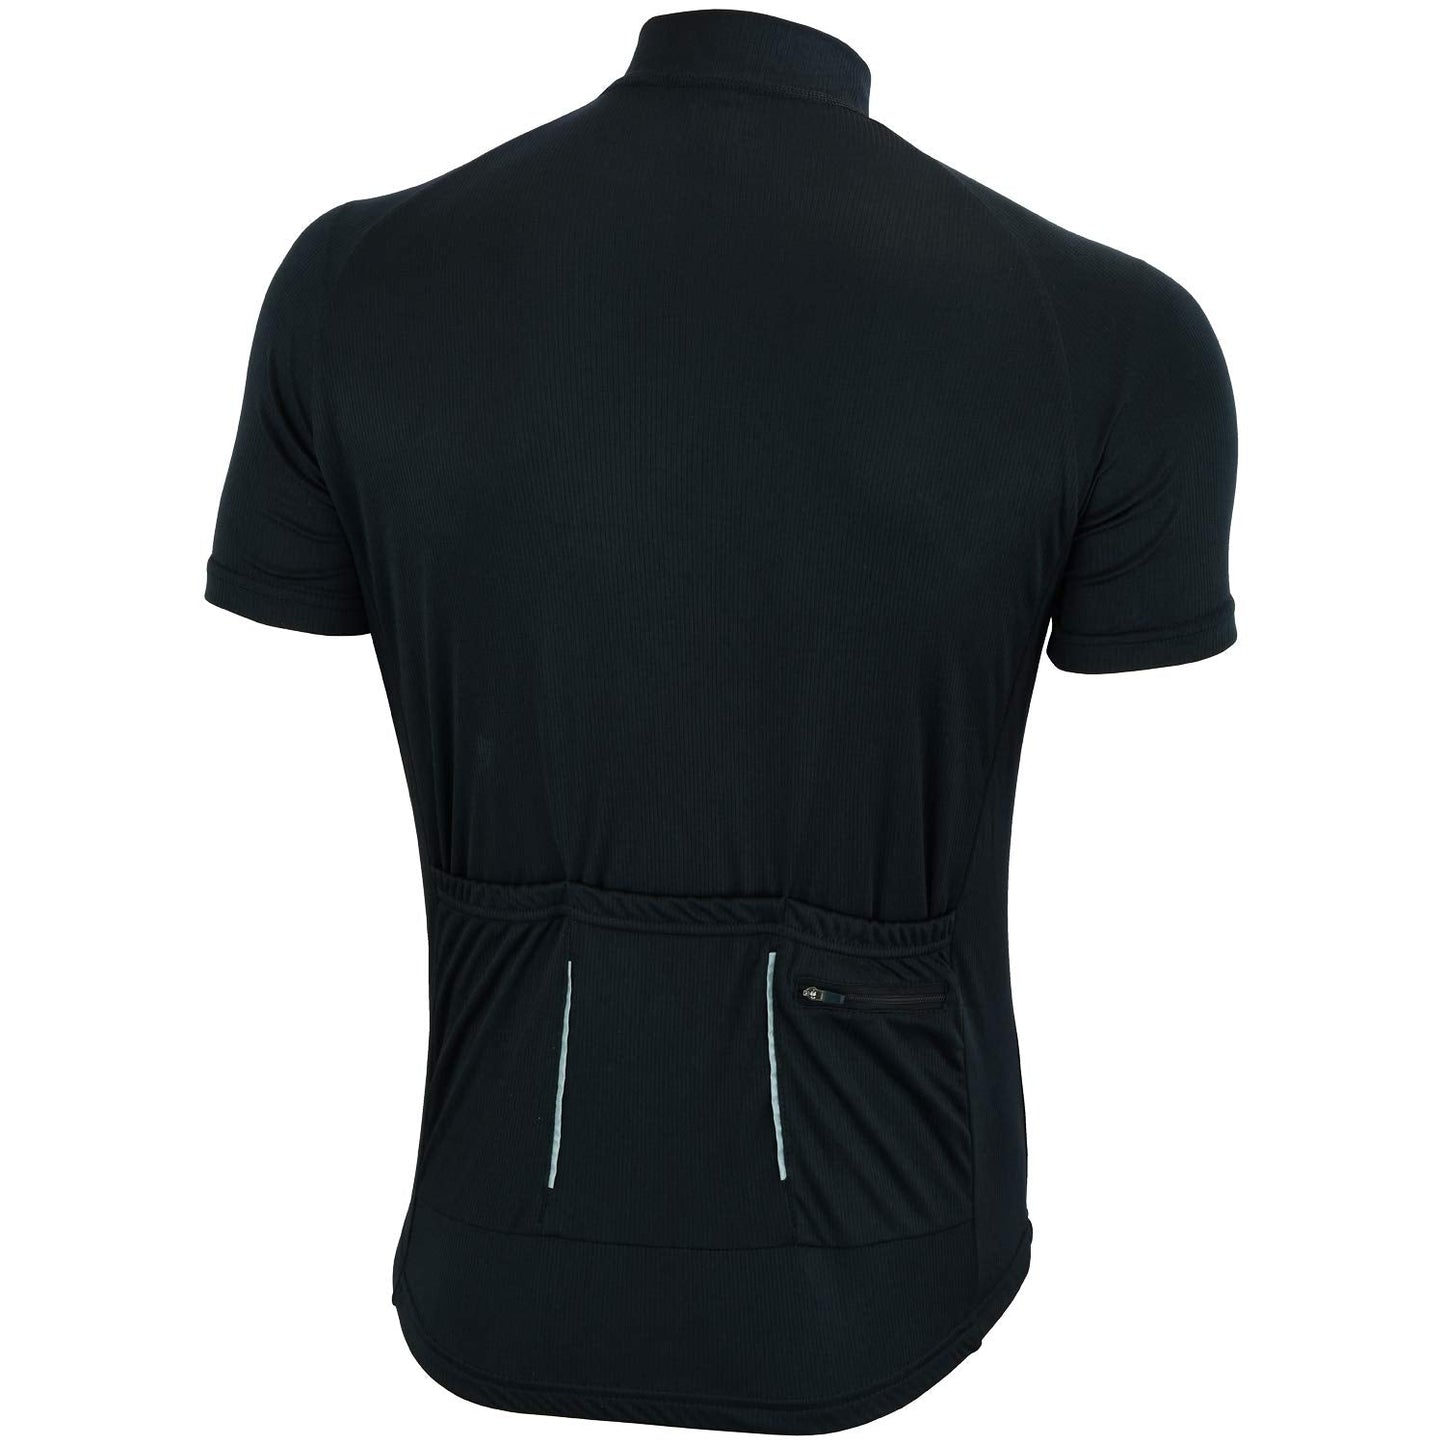 Didoo Cycling Jersey for Men Short Sleeve Tops Mountain Bike-MTB Summer Racing Shirt